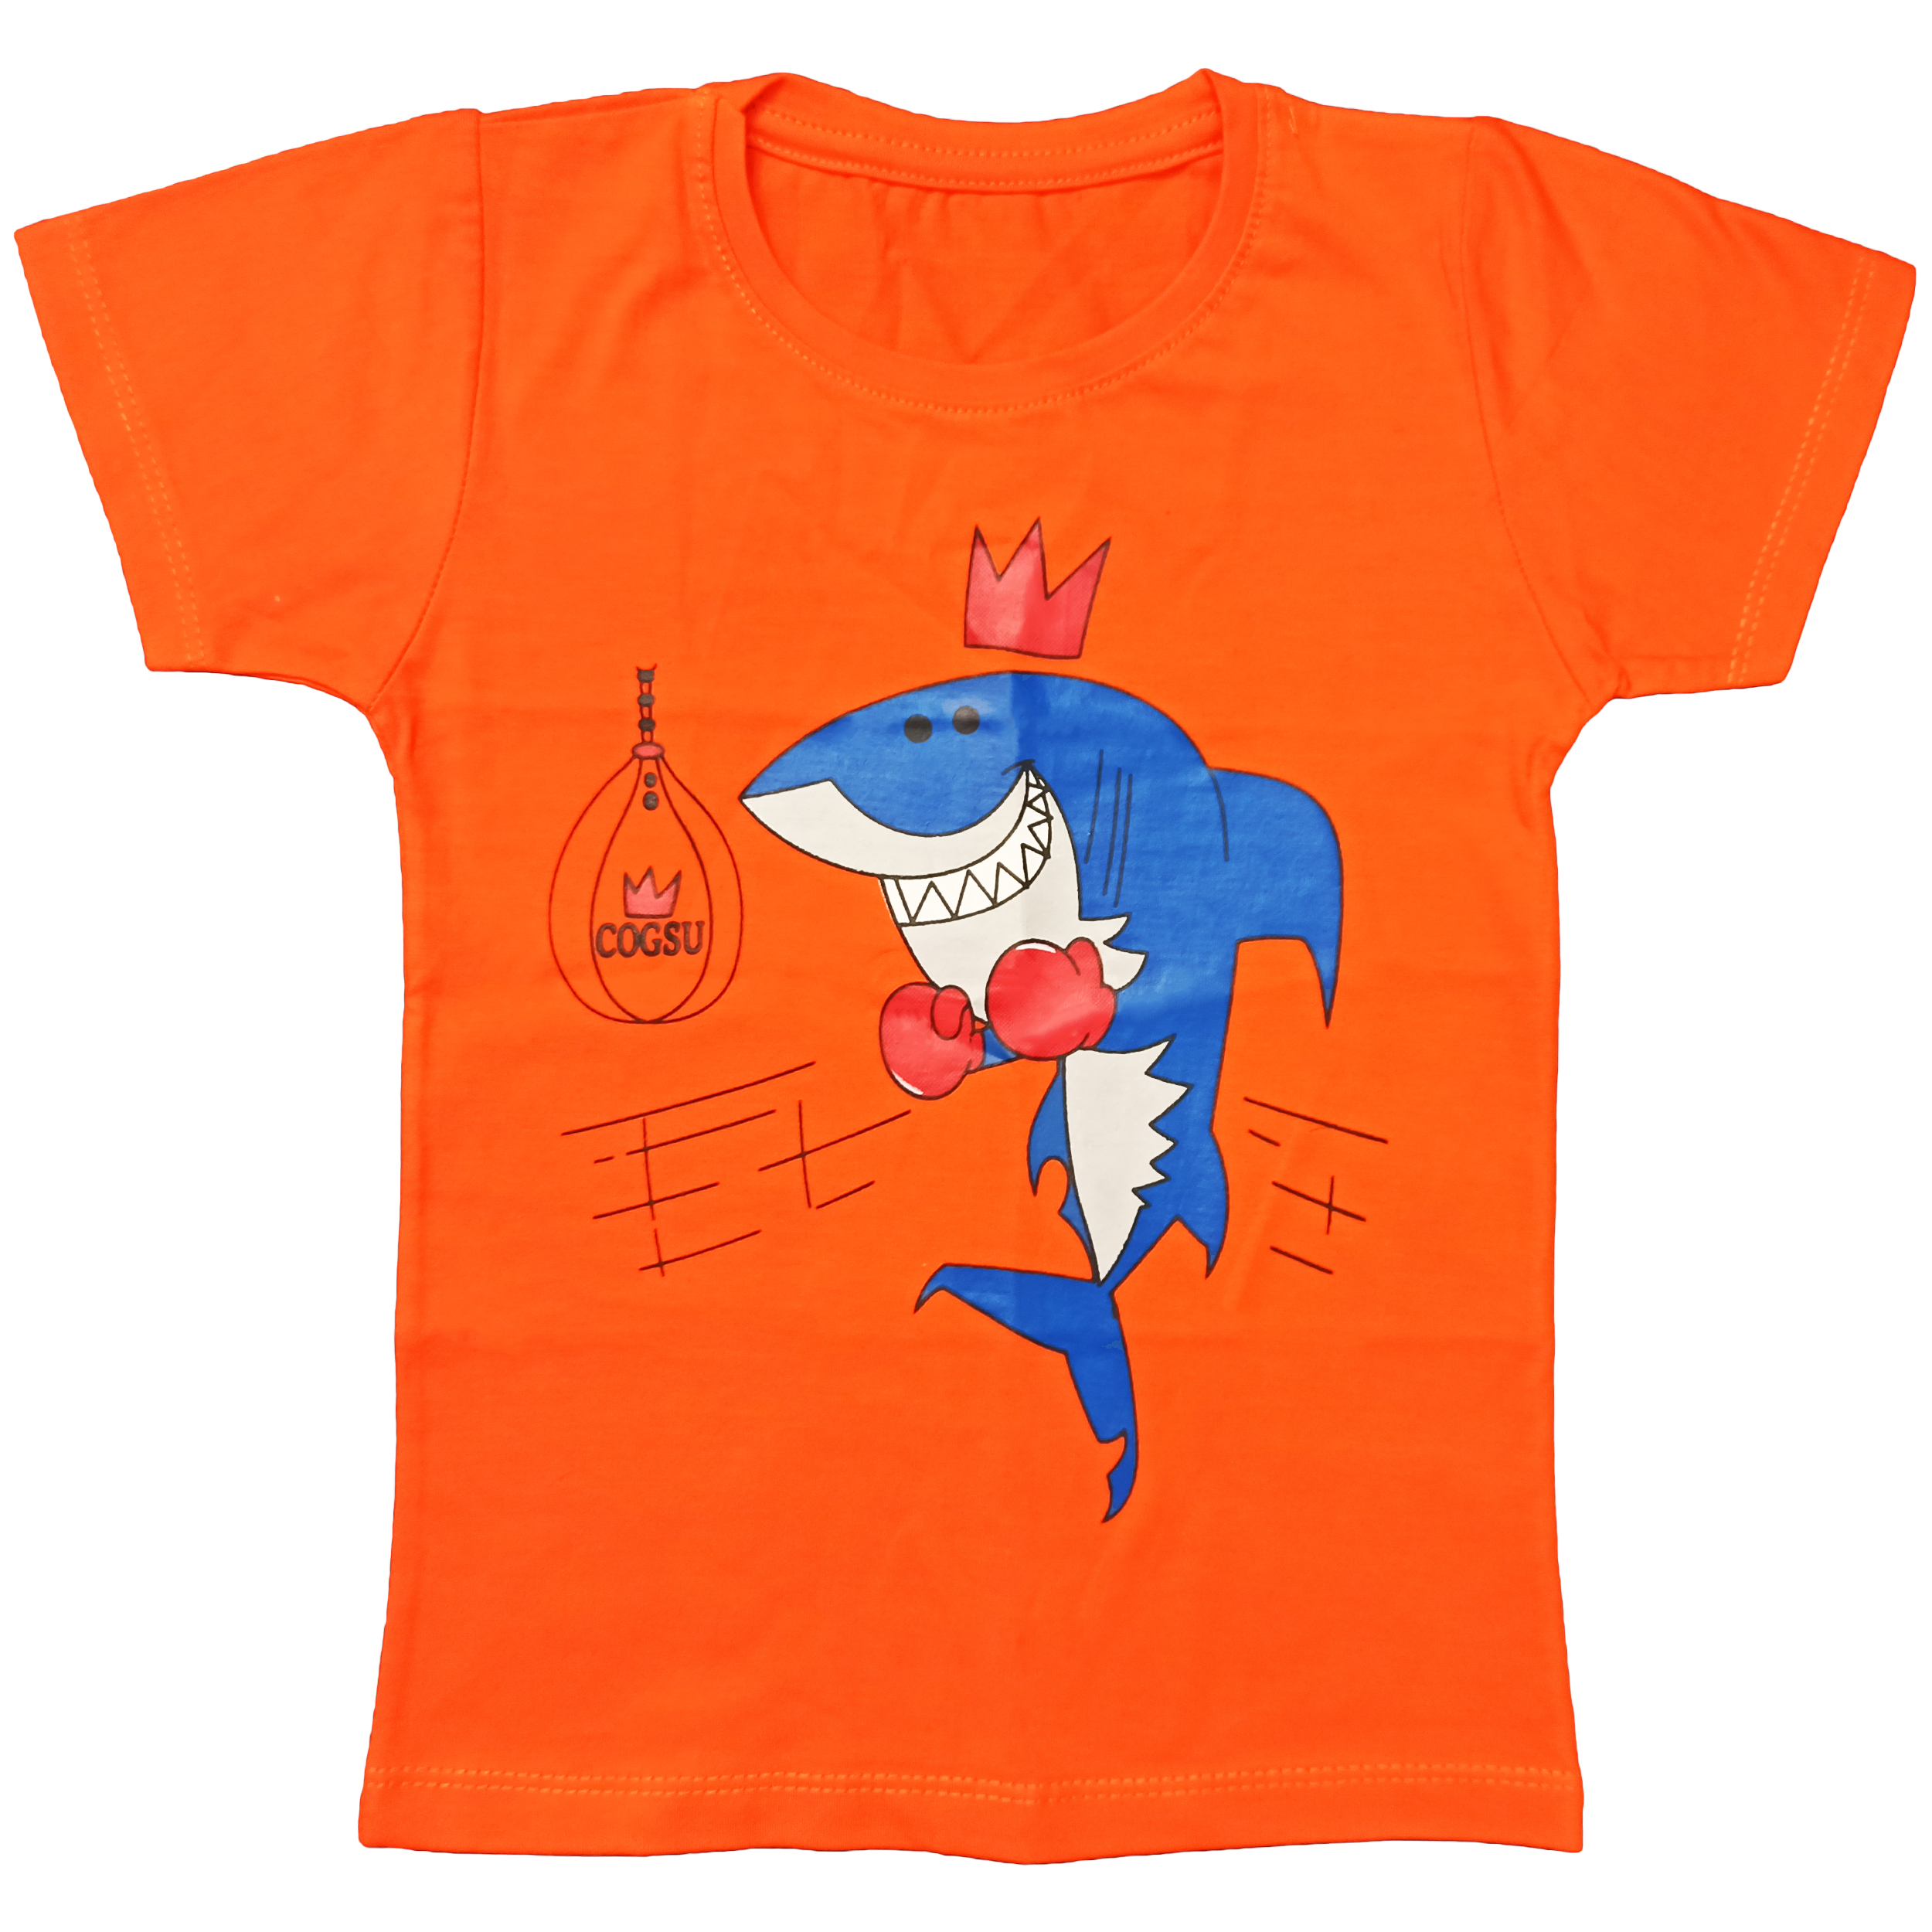 تی شرت آستین کوتاه پسرانه مدل کوسه ی بوکسور کد 174 رنگ نارنجی